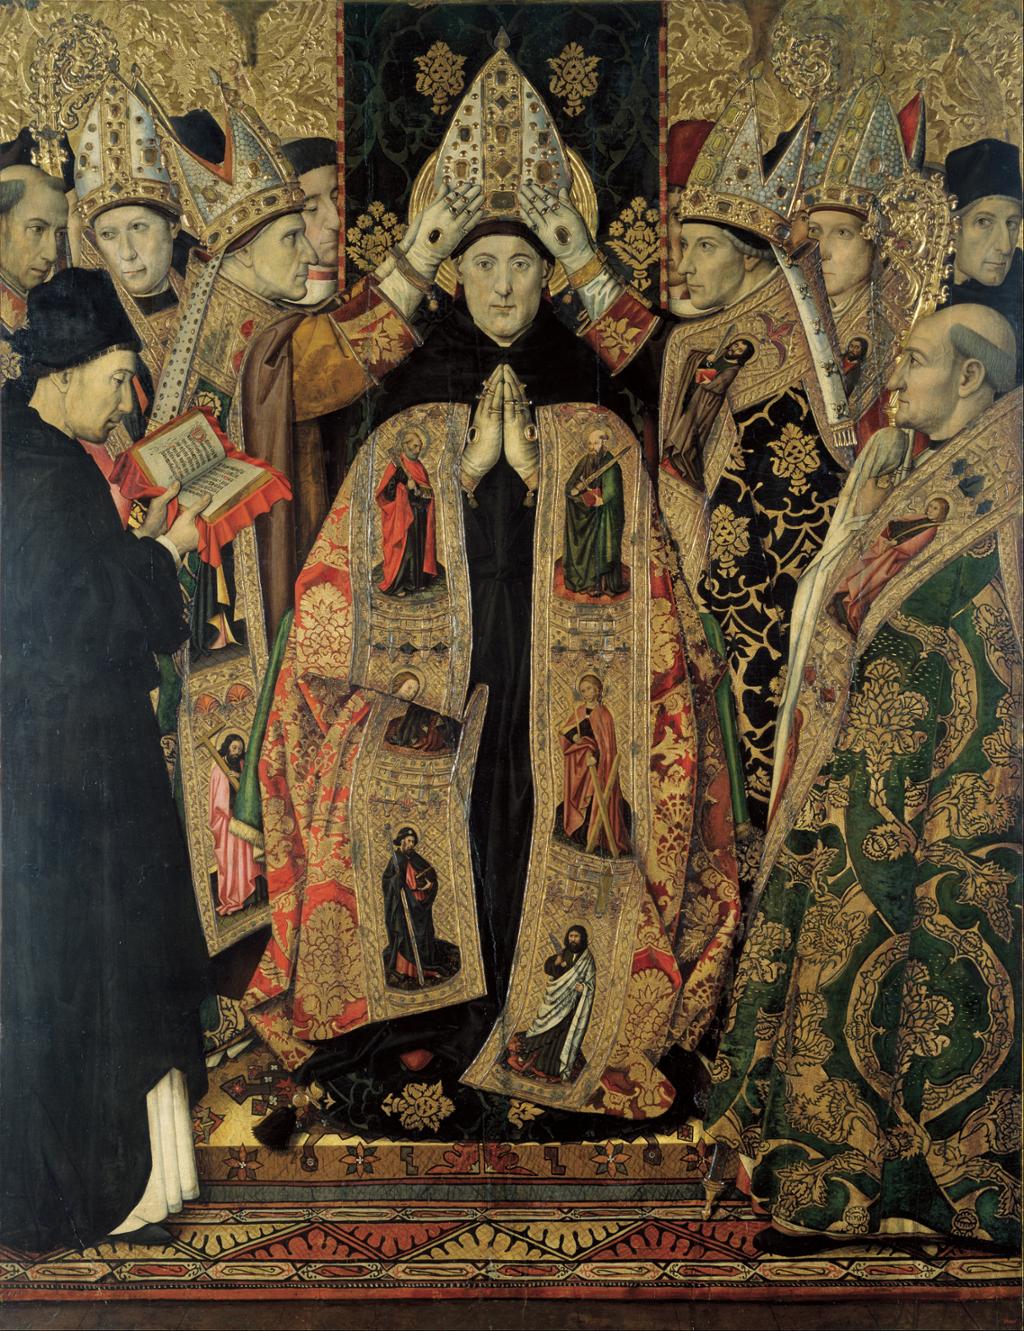 En mann i rikt dekorert kappe blir påsatt en biskopslue av to menn, også i dekorerte kapper. Flere menn i prestekapper står rundt. Oljemaleri dekorert med bladgull.